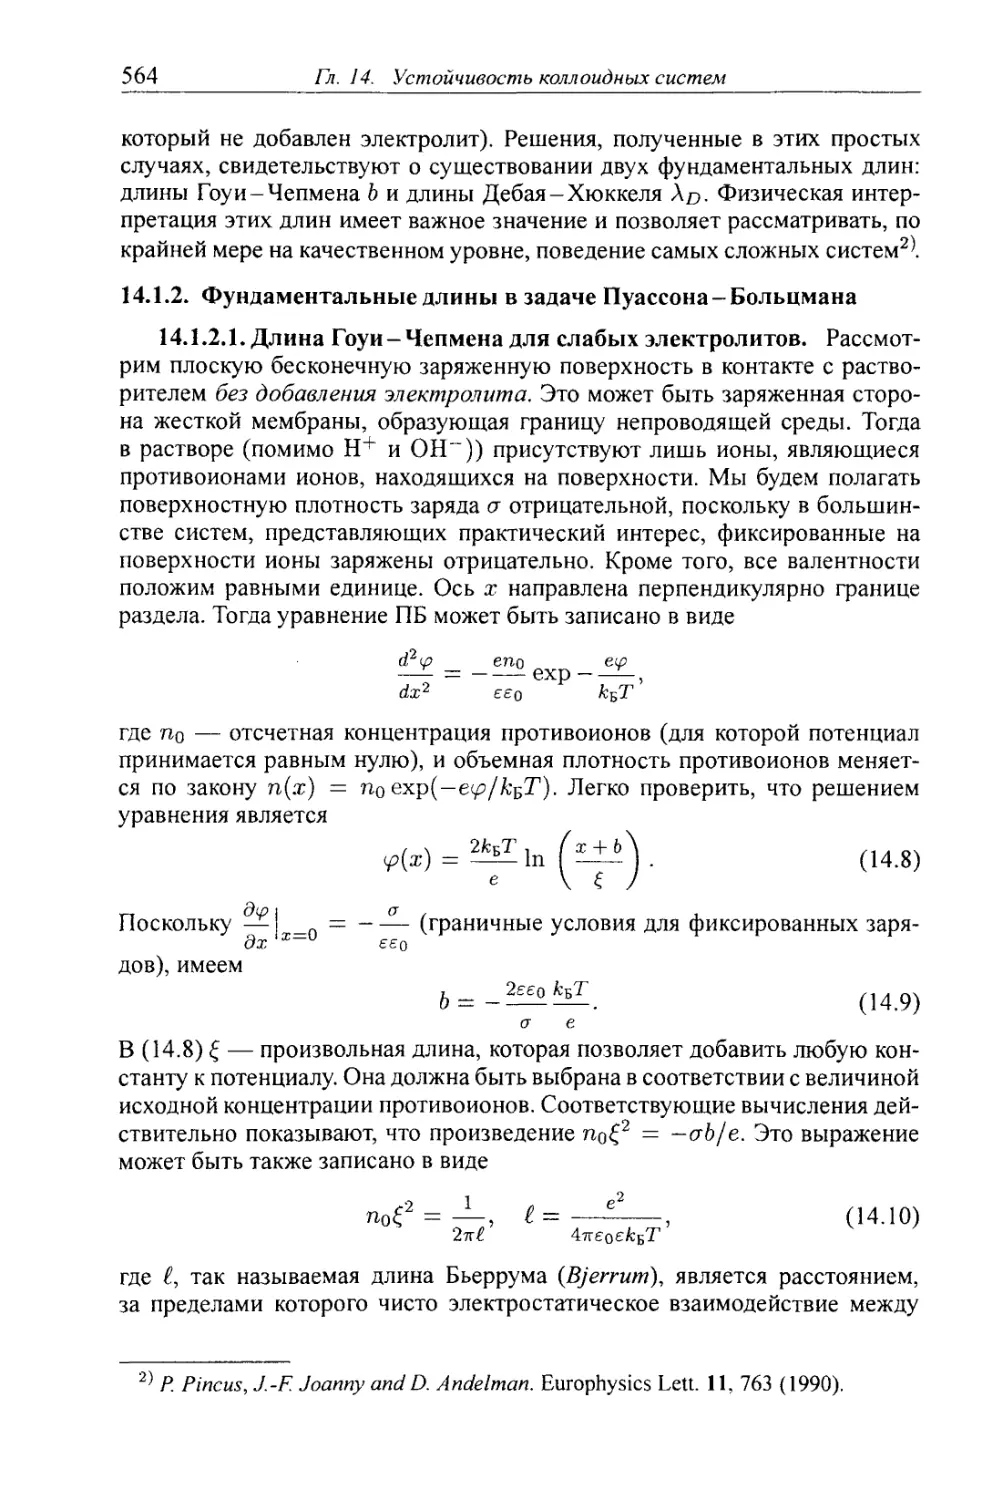 14.1.2. Фундаментальные длины в задаче Пуассона - Больцмана